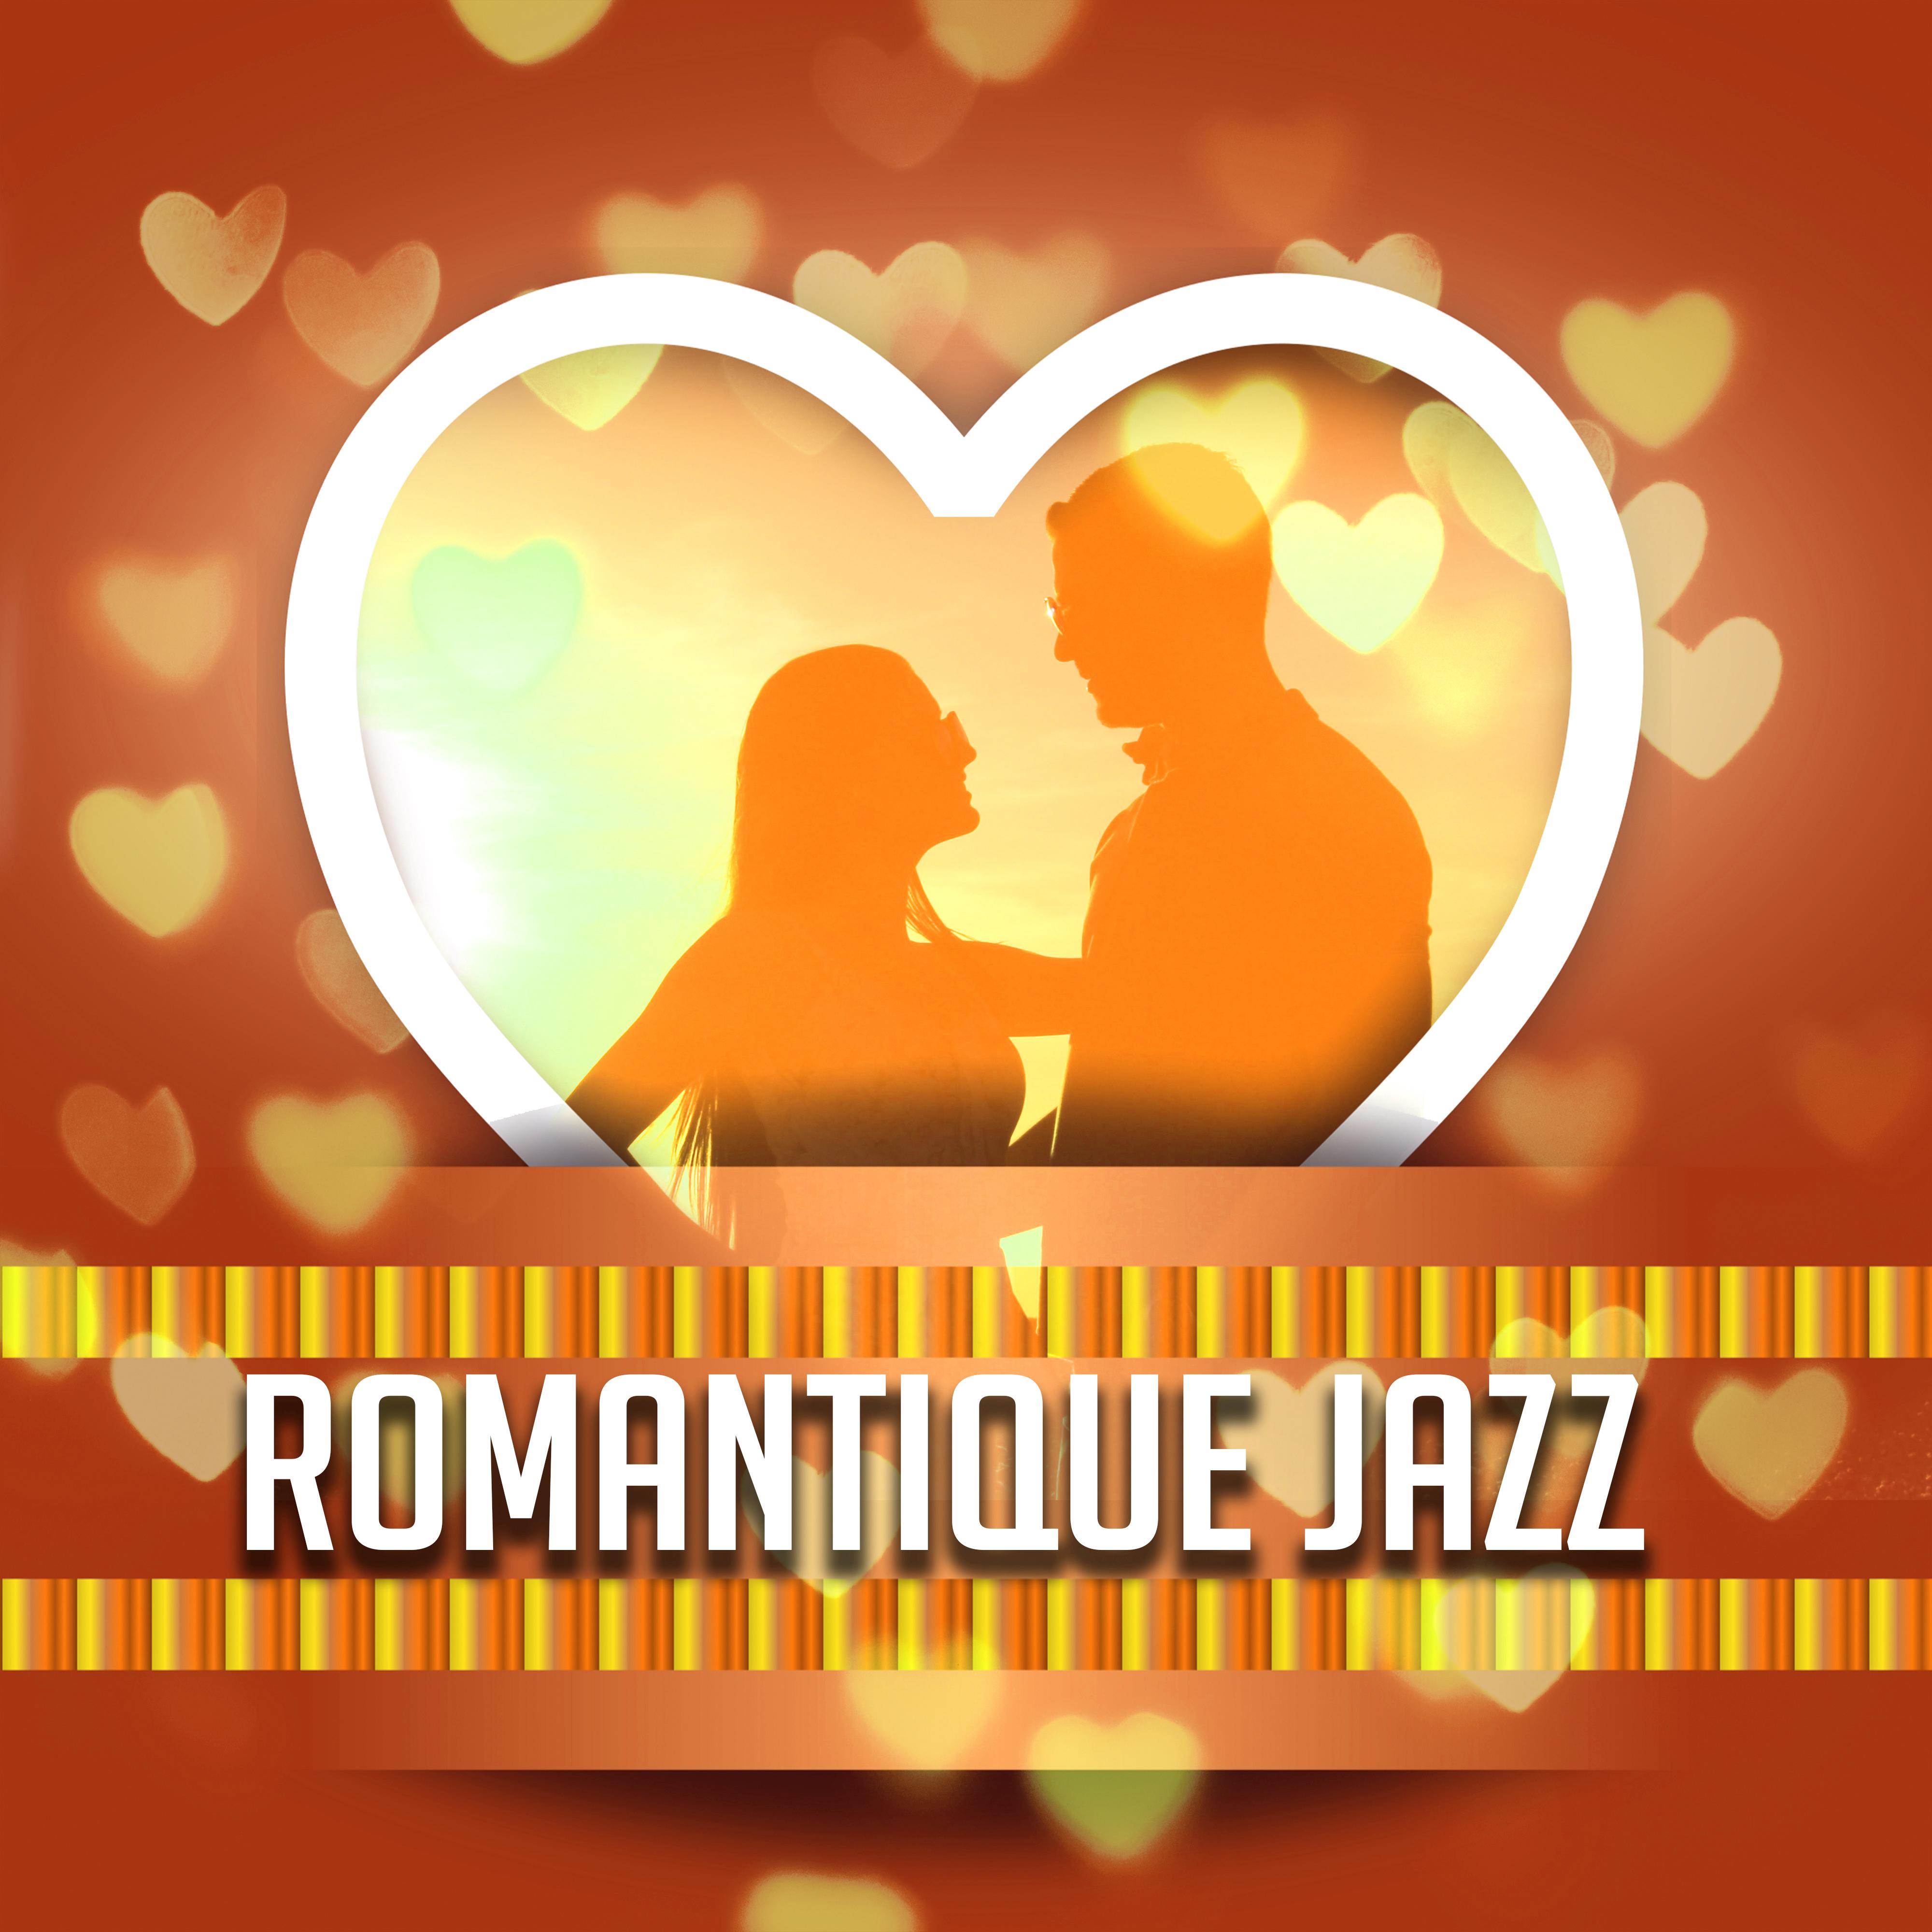 Romantique Jazz  Musique e rotique, instrumentale saxophone, jazz relaxant